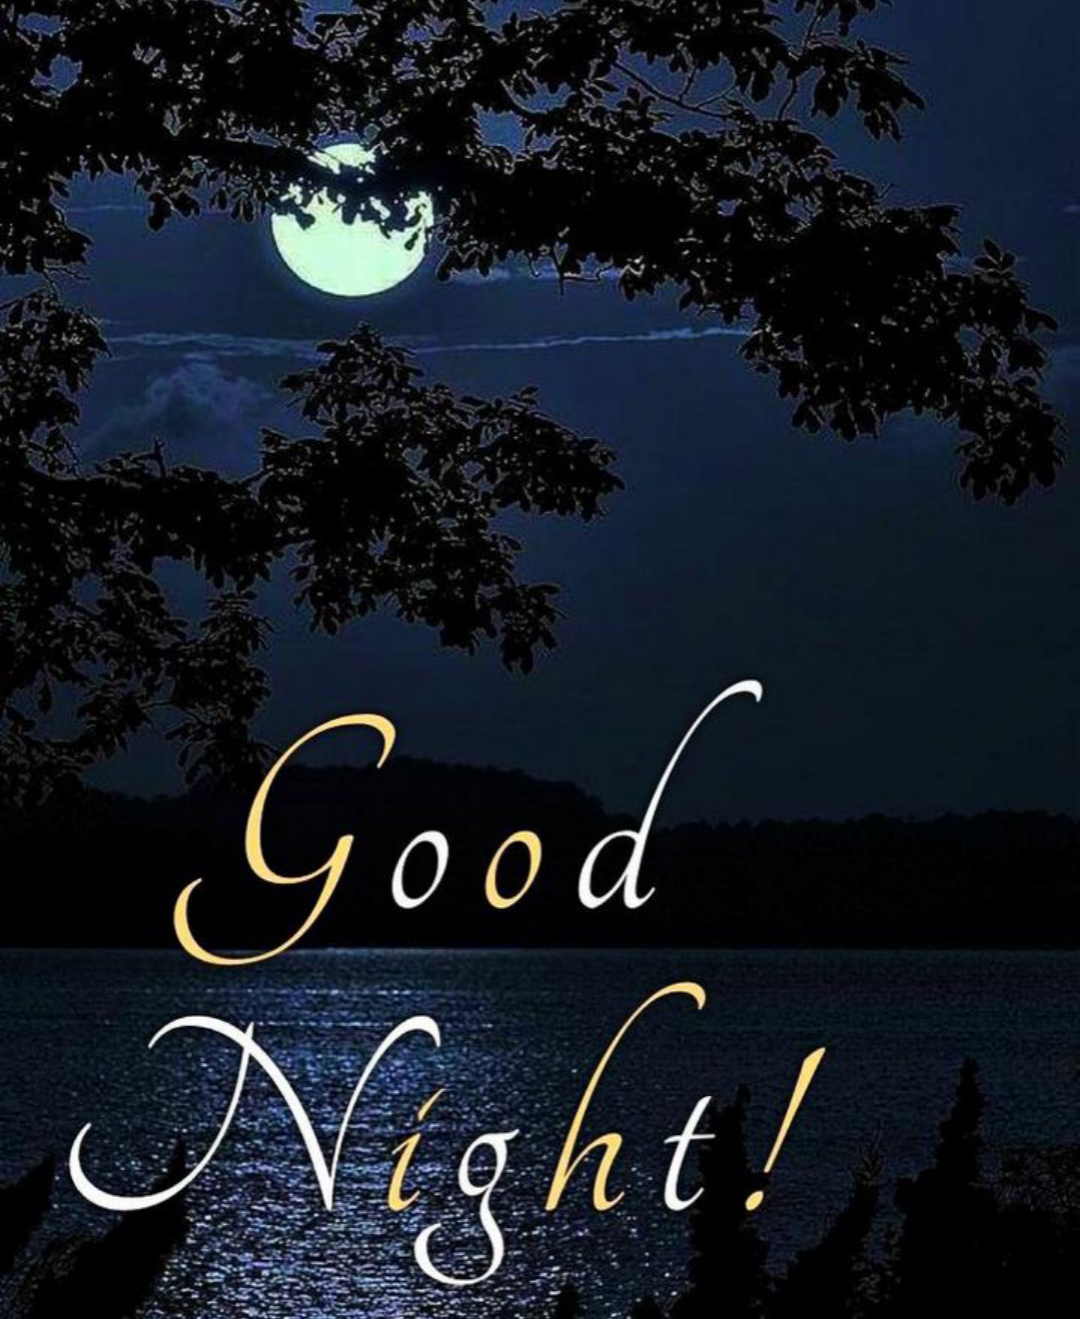 good night good night good night good night good night good night ...